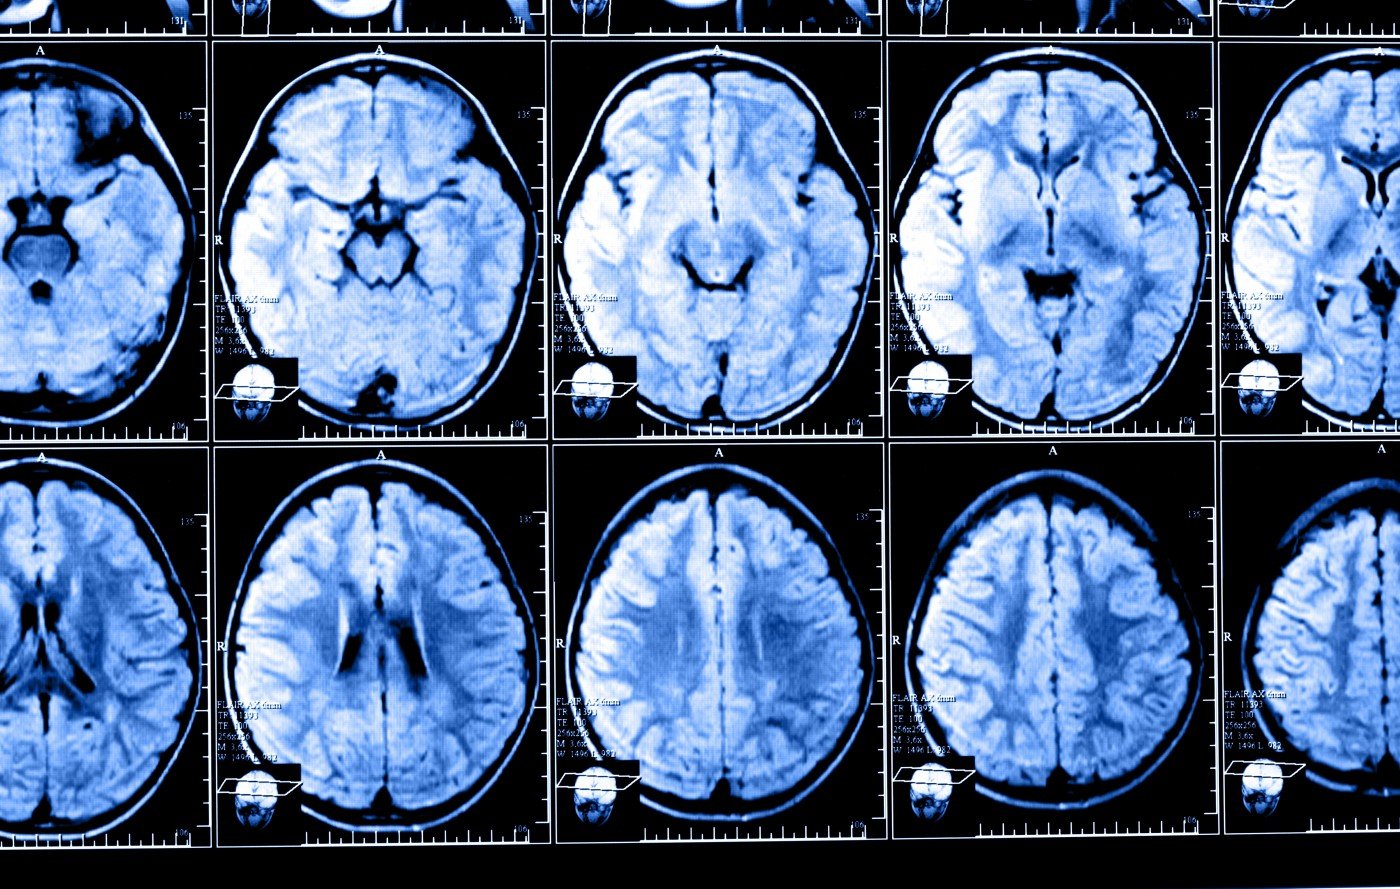 MS brain scans